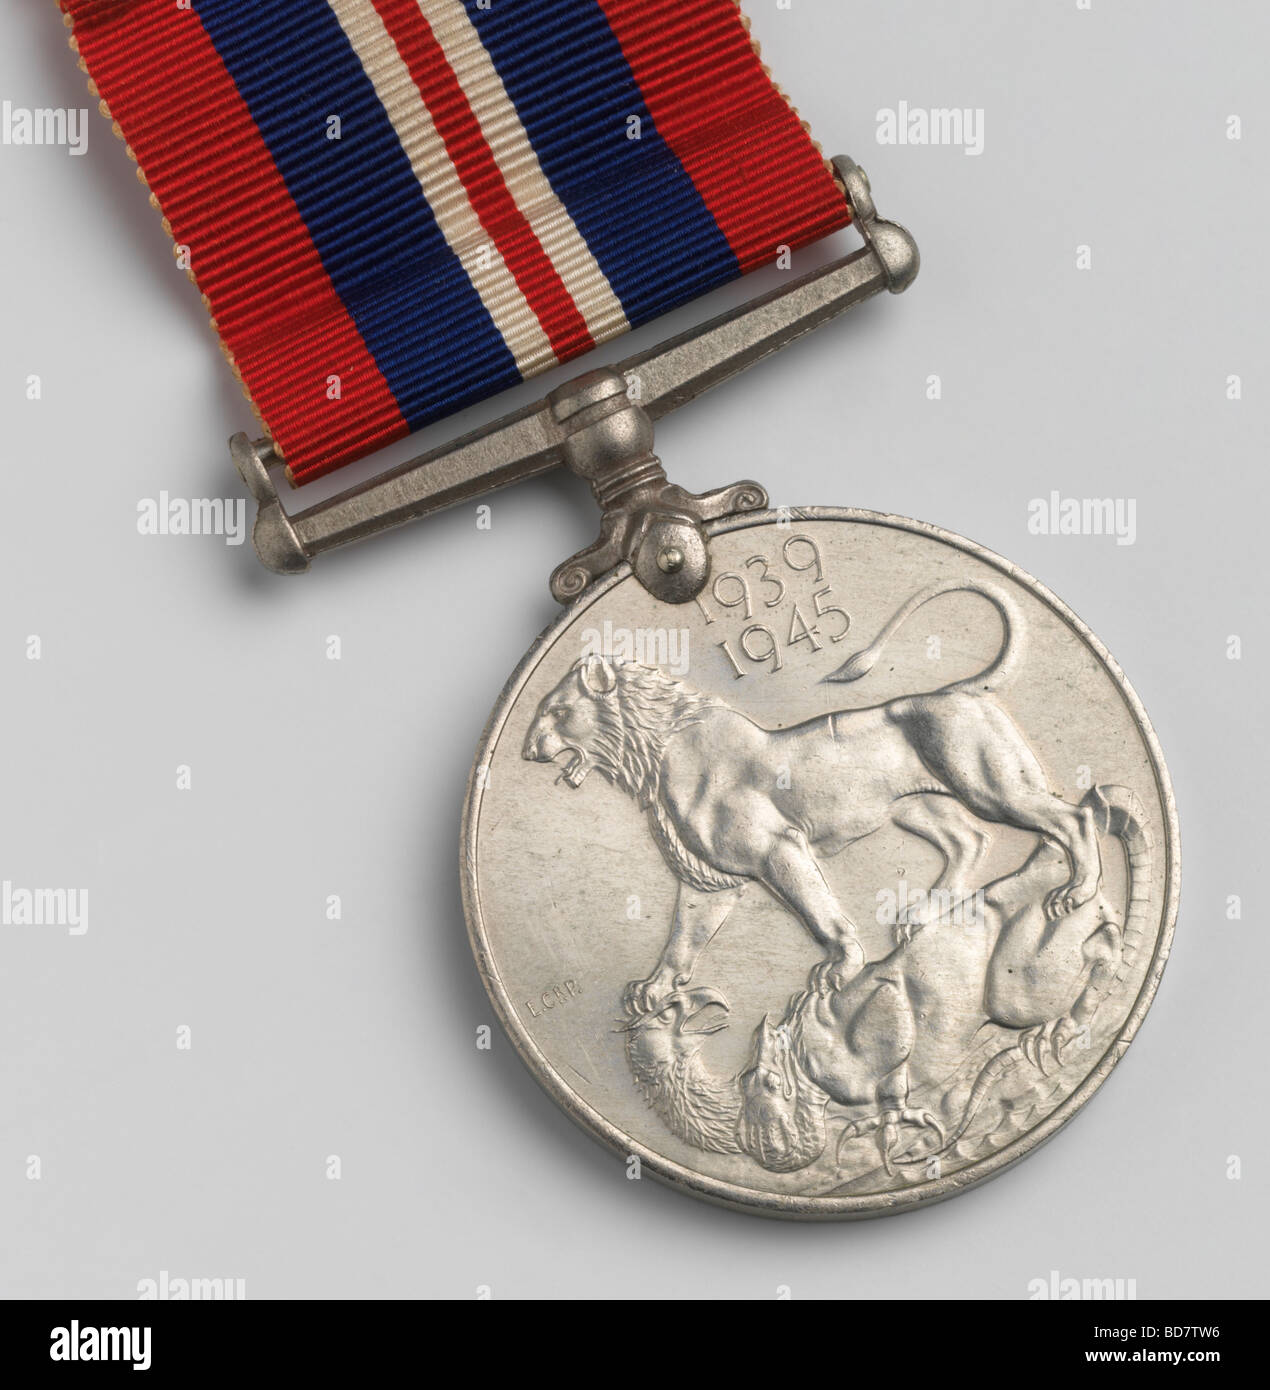 El reverso de la medalla de servicio y de la Mancomunidad Británica desde la segunda guerra mundial Foto de stock